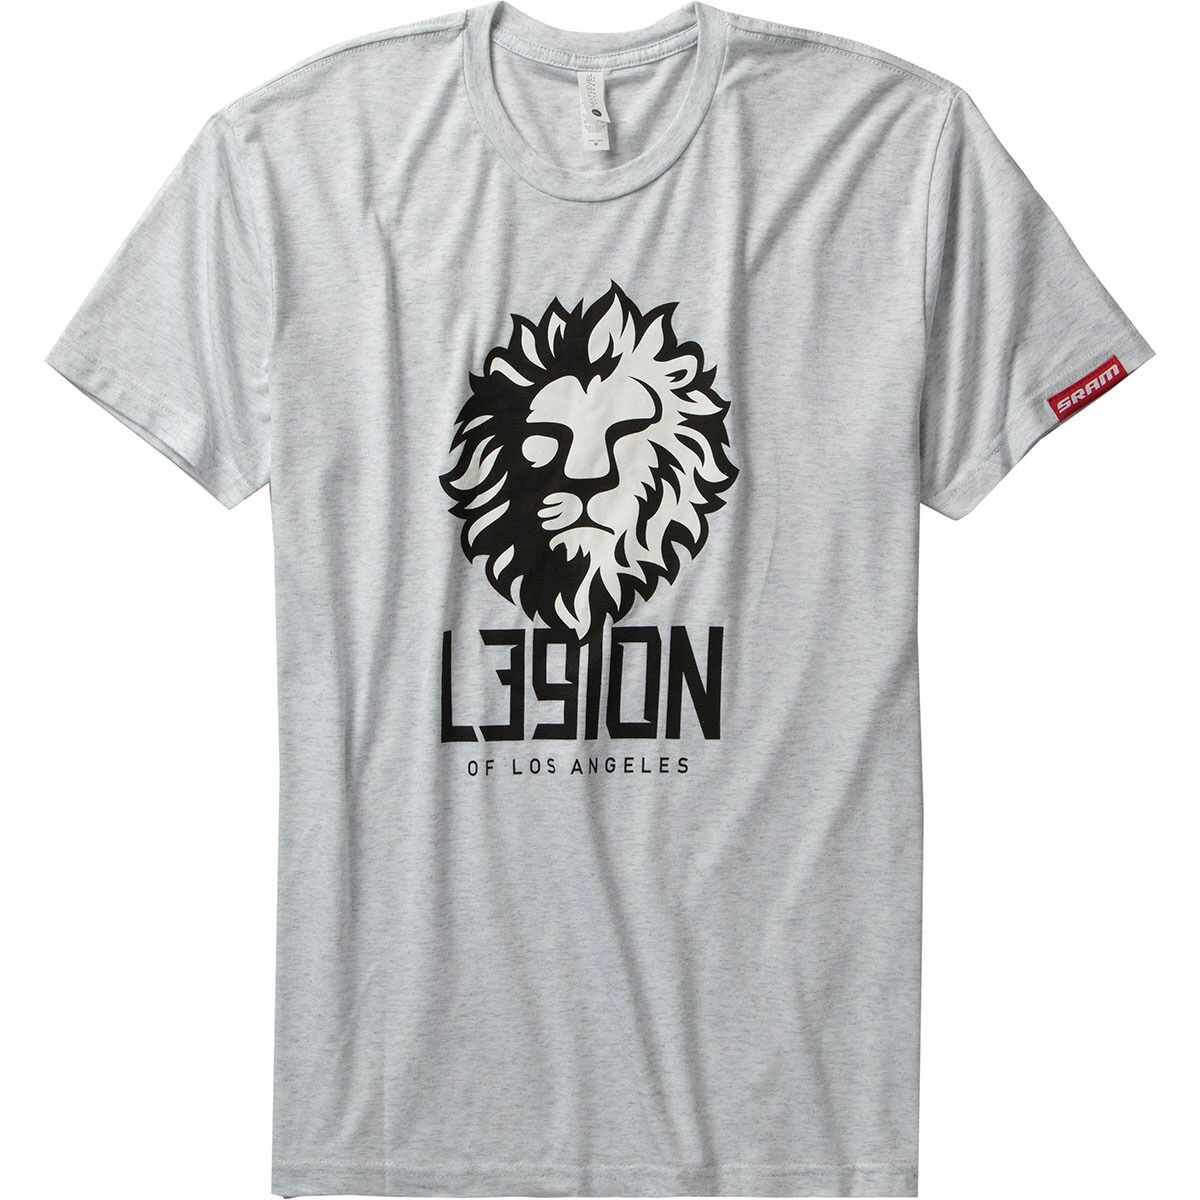 SRAM L39ION T-Shirt - Men's